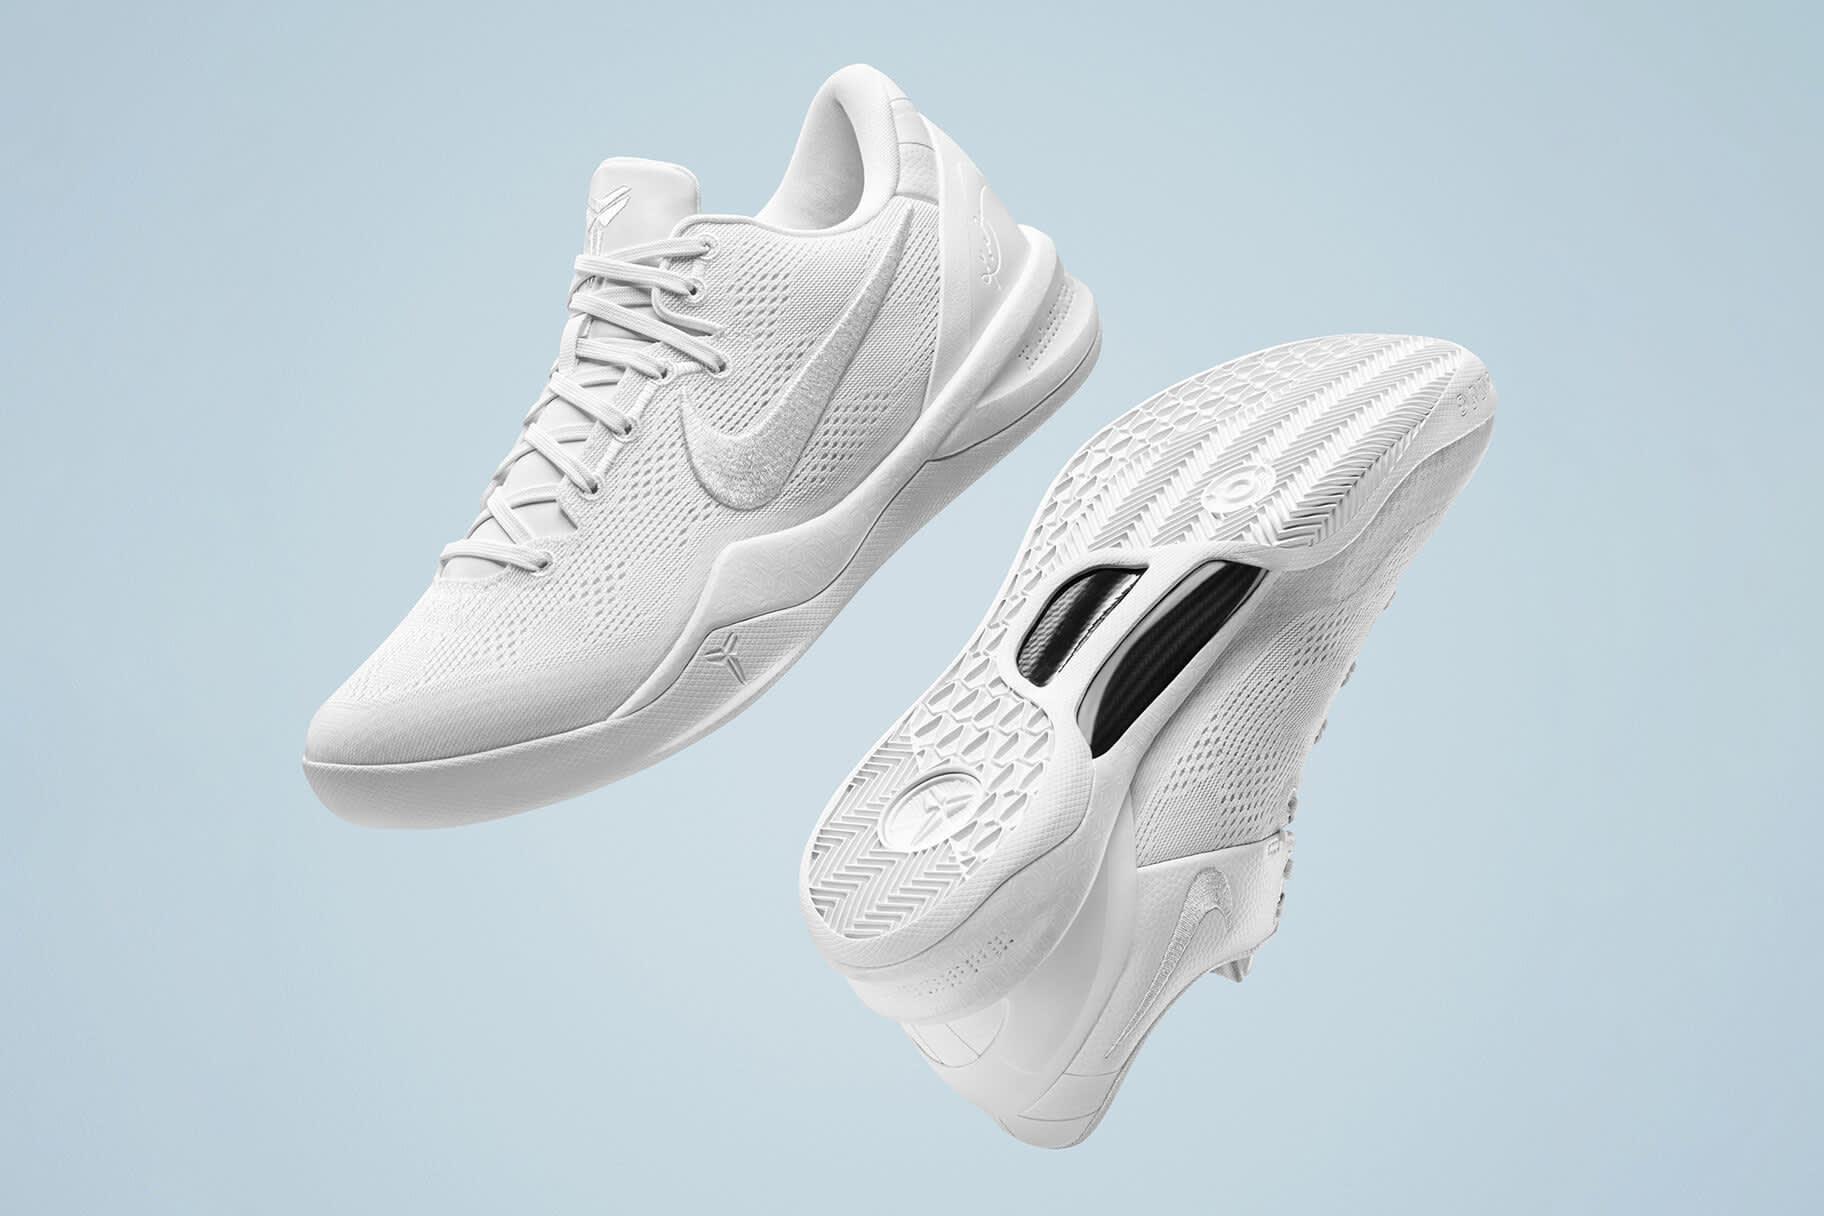 Nikeがバスケットボールのスーパースターを偲び、コービー 8を発売